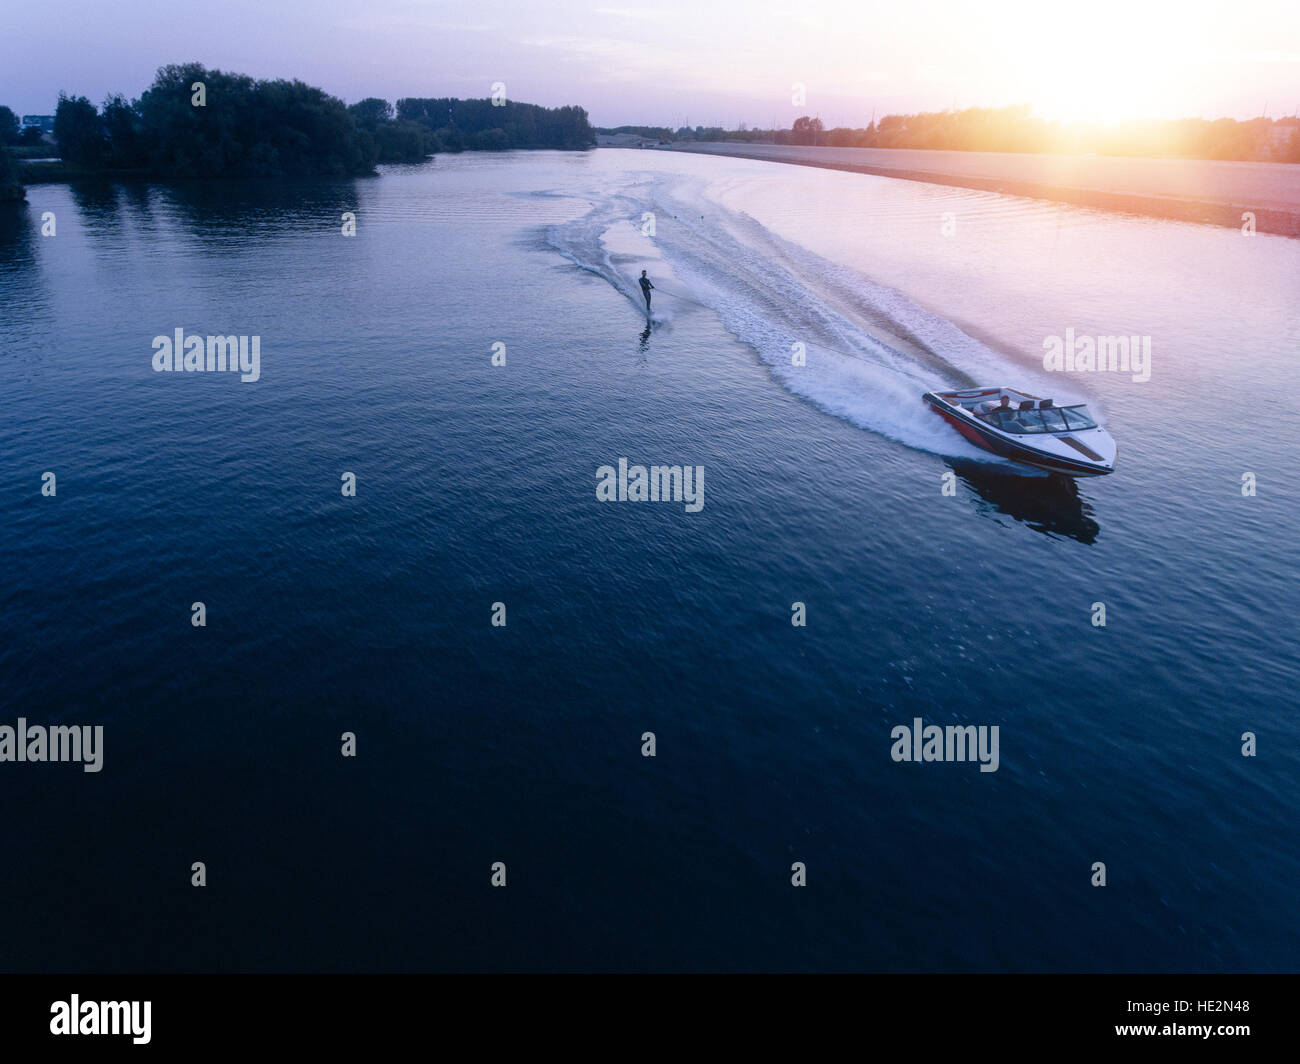 Luftaufnahme des Mannes Wakeboarden auf See bei Sonnenuntergang. Wasserski auf See hinter einem Boot. Stockfoto